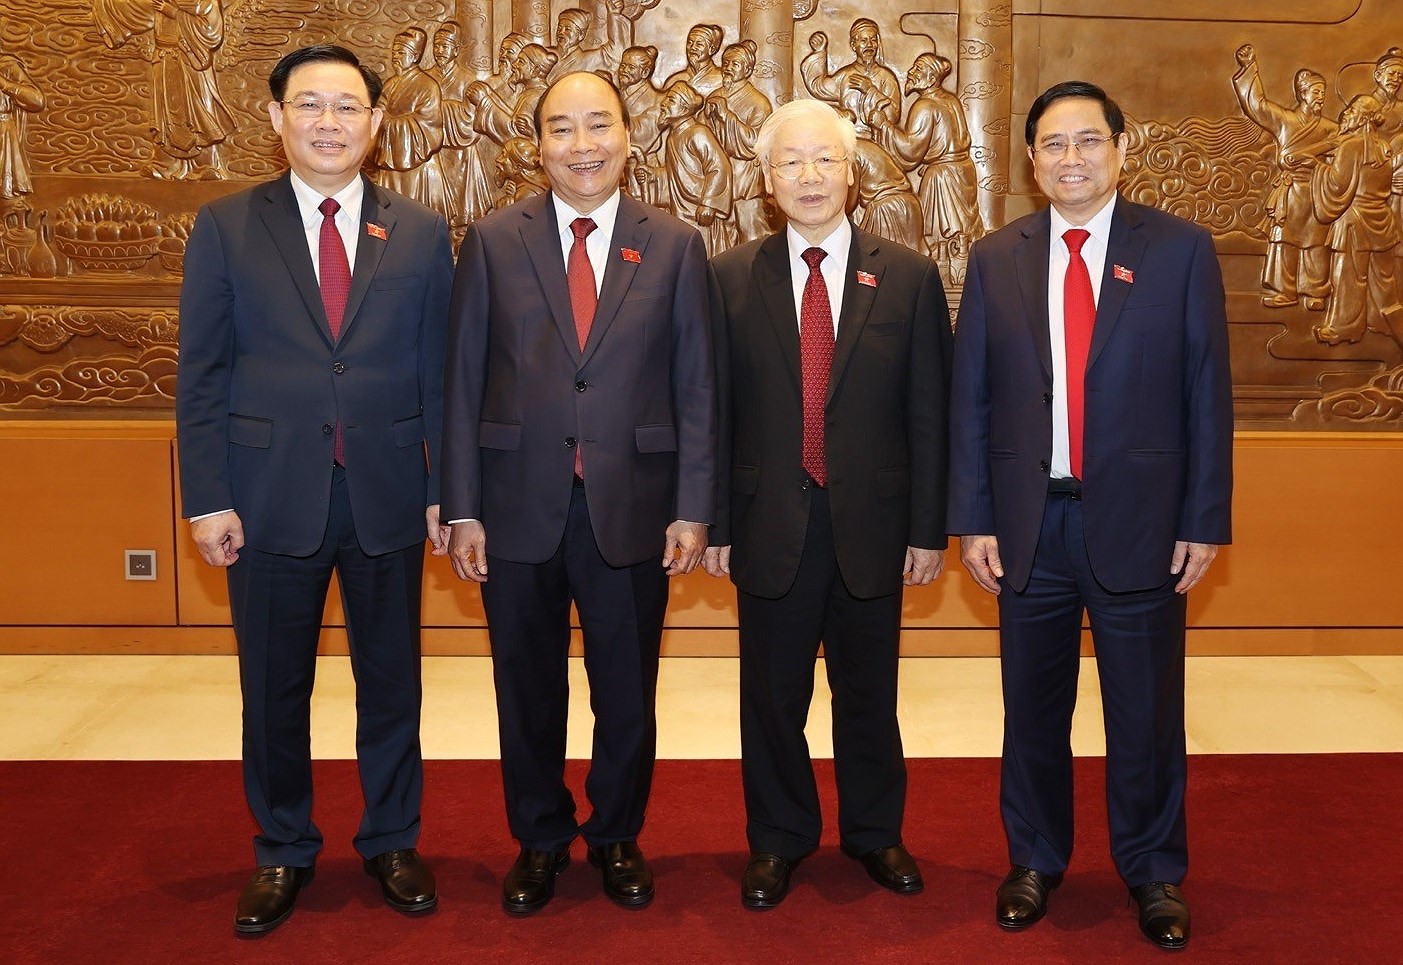 外国领导人致电或致函祝贺越南新一届领导人 hinh anh 1